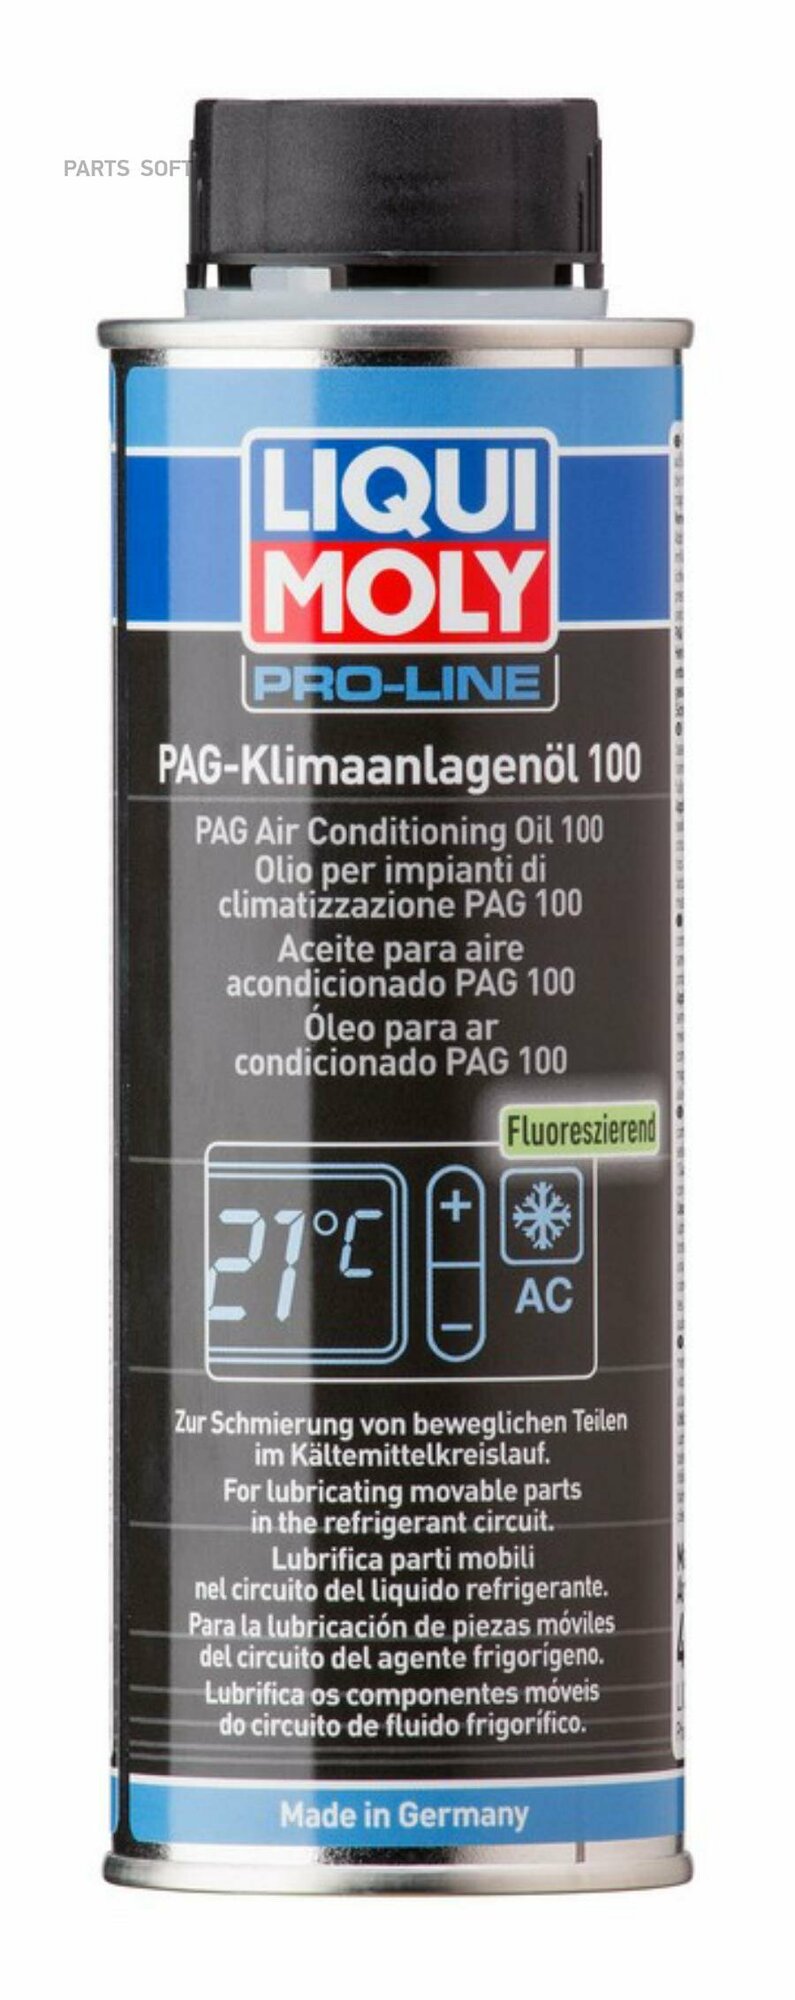 LIQUI MOLY 4089 LiquiMoly PAG Klimaanlagenoil 100 0.25L_масло для кондиционеров !\